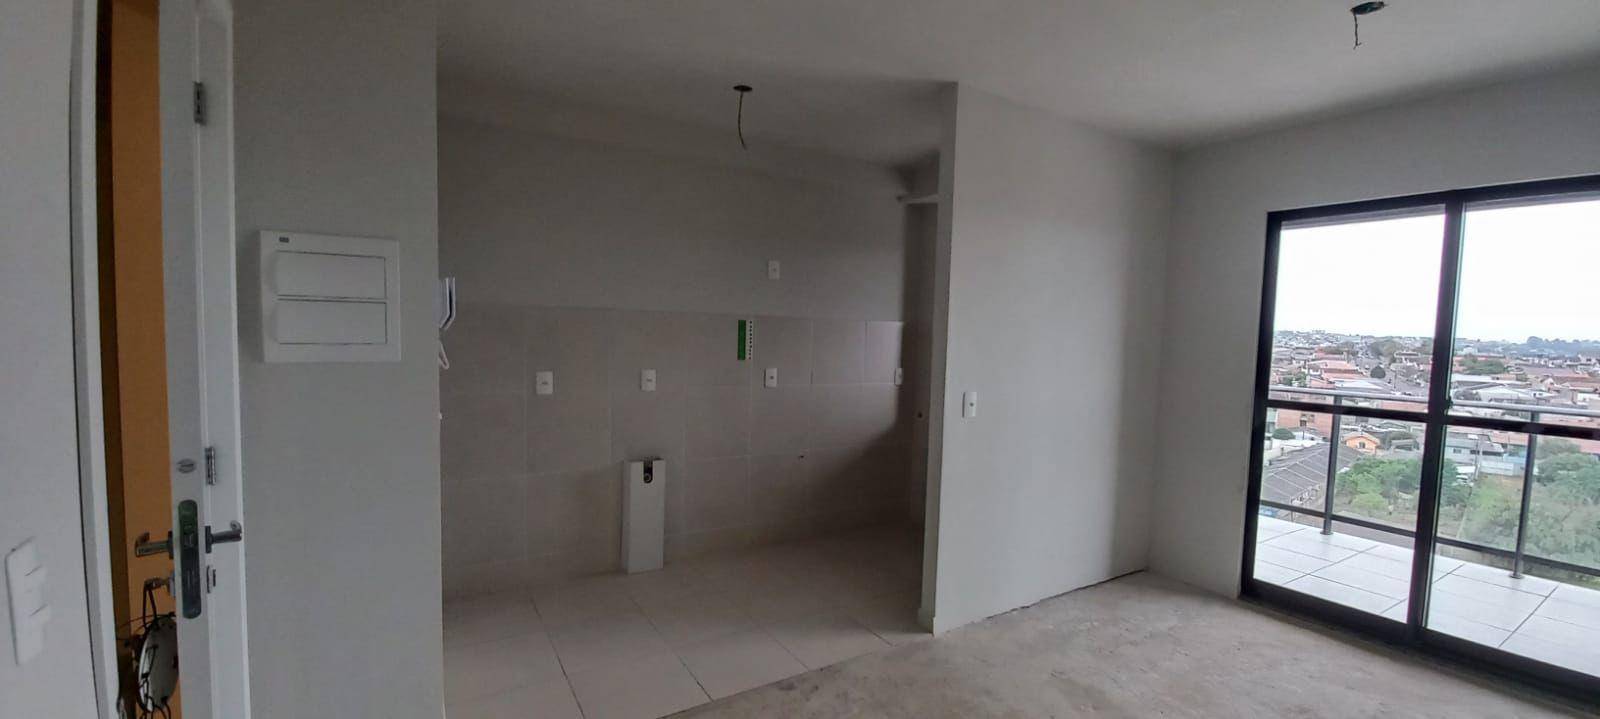 Apartamento para venda no Contorno em Ponta Grossa com 81m² por R$ 280.000,00